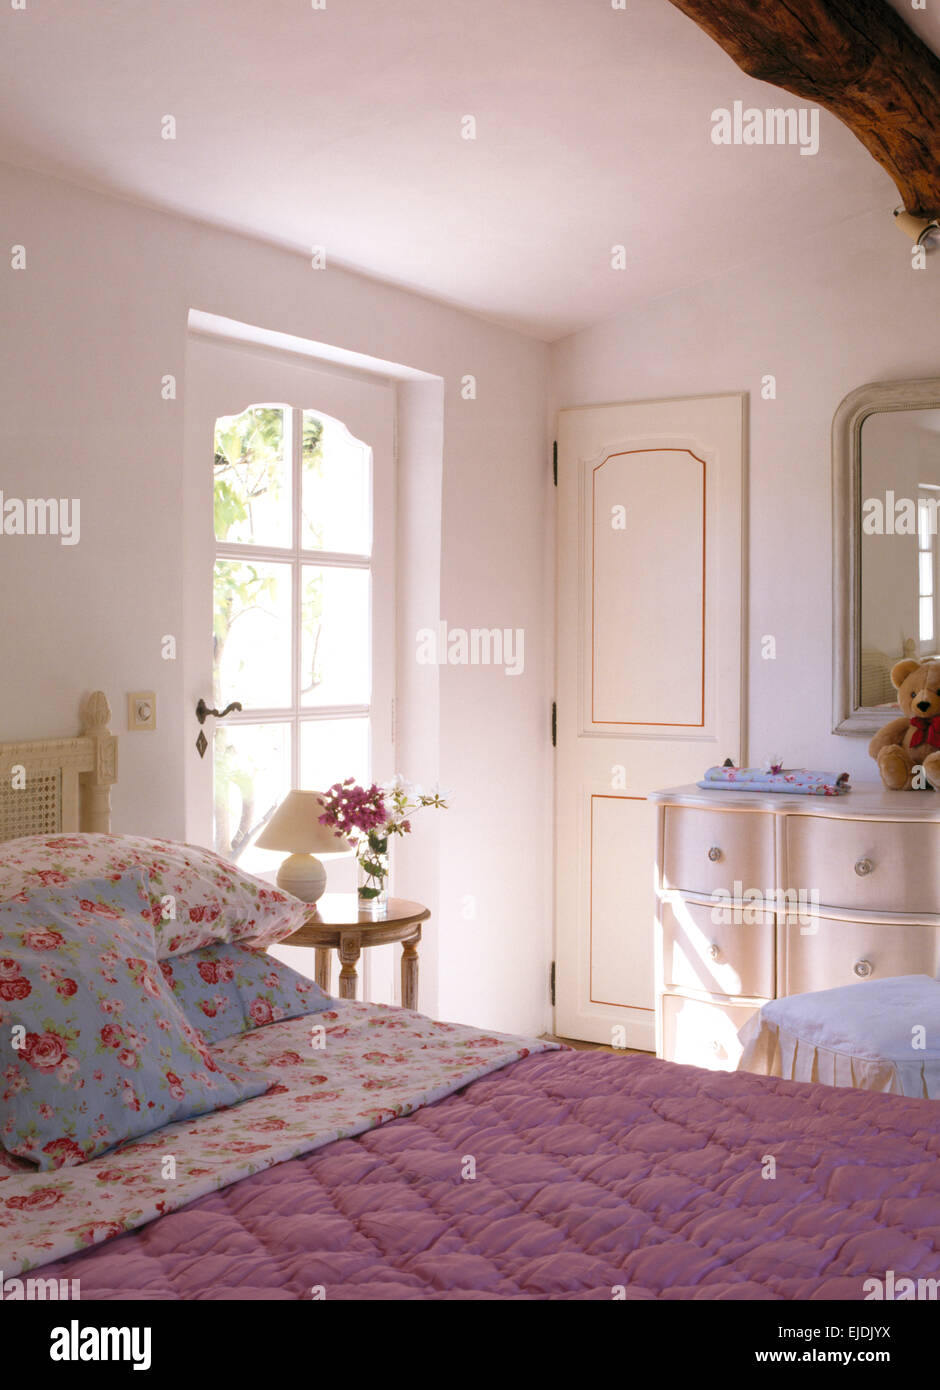 Rose modellato cuscini e piumini rosa sul letto nel paese francese camera da letto Foto Stock